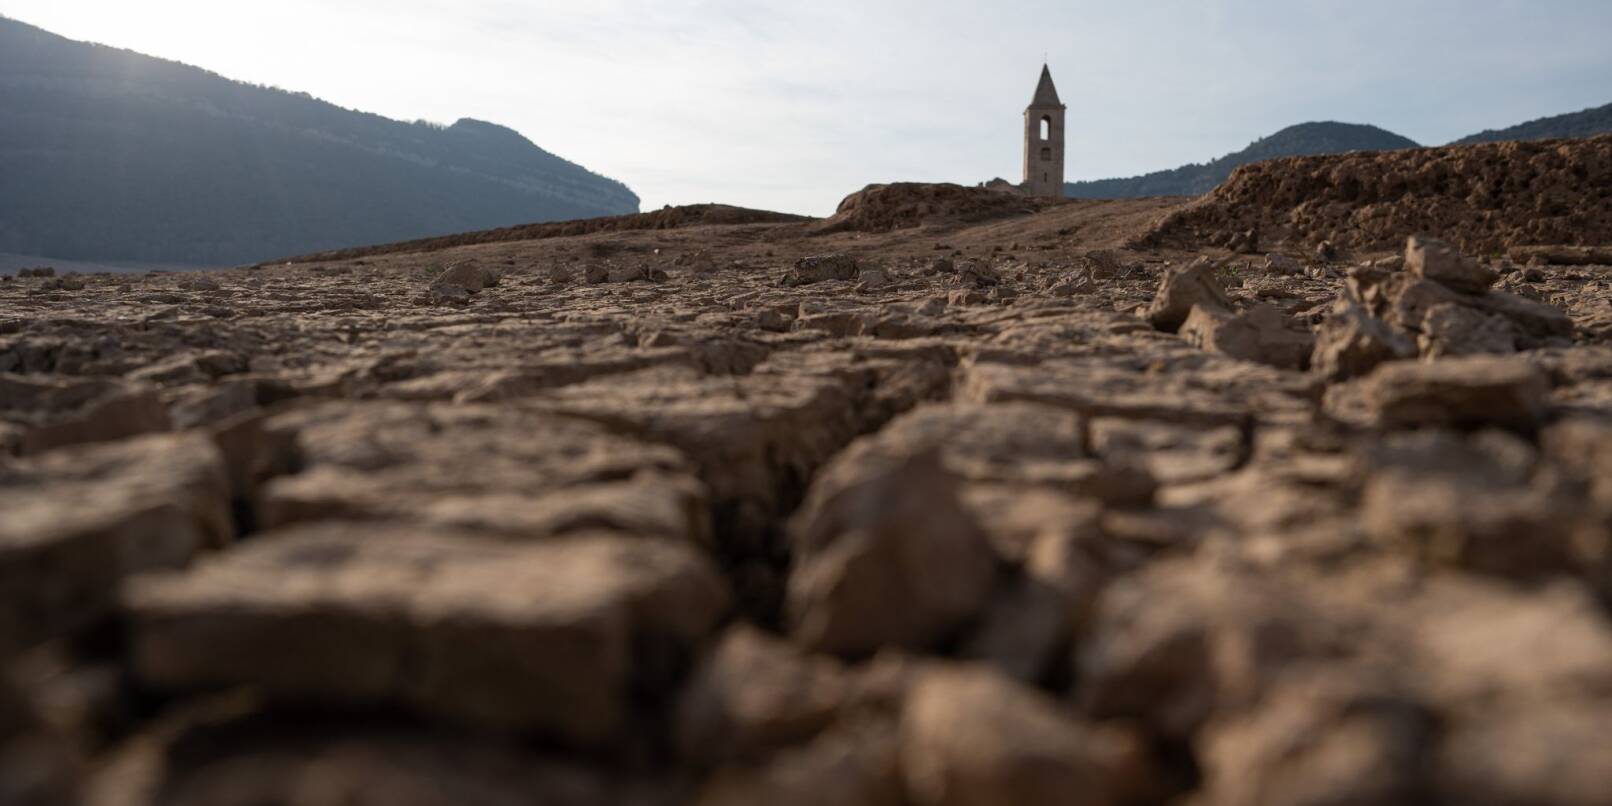 Risse im Boden im Sau-Stausee in Katalonien zeigen anhaltenden Wassermangel auf.